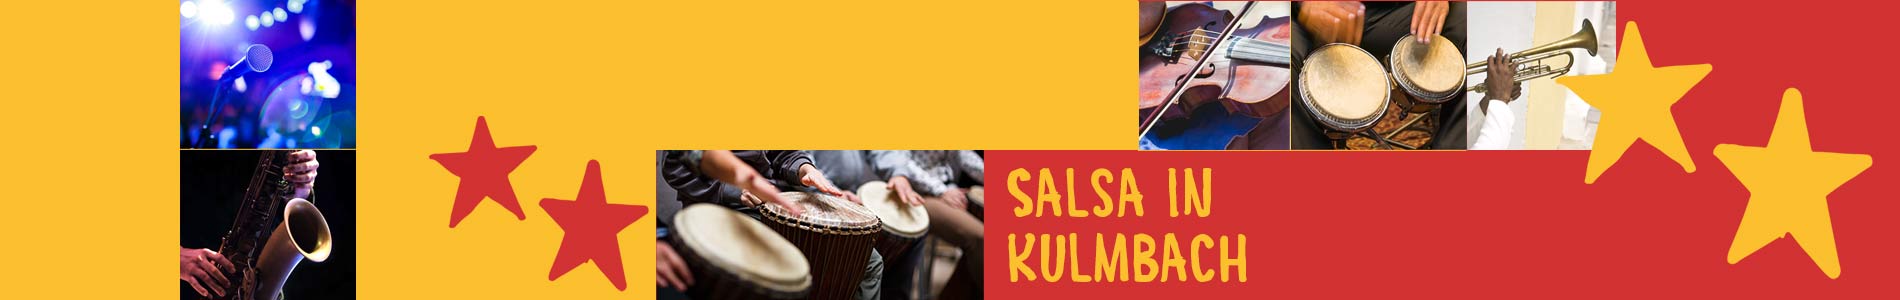 Salsa in Kulmbach – Salsa lernen und tanzen, Tanzkurse, Partys, Veranstaltungen